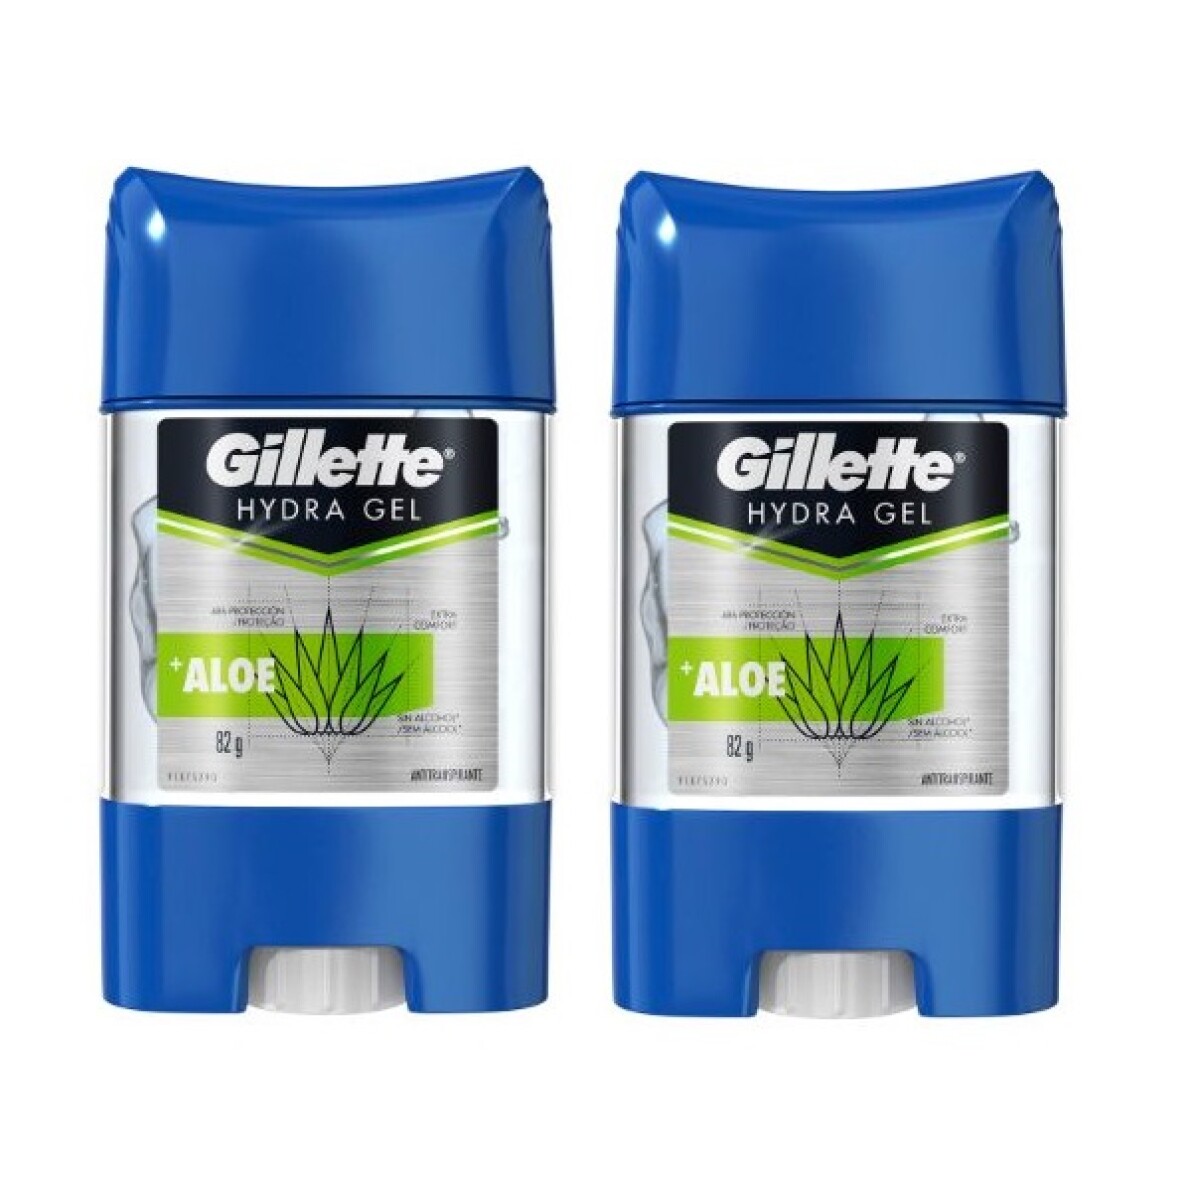 Desodorante Gel Gillette Hydra Gel Aloe 82 Grs. 2 Uds. 